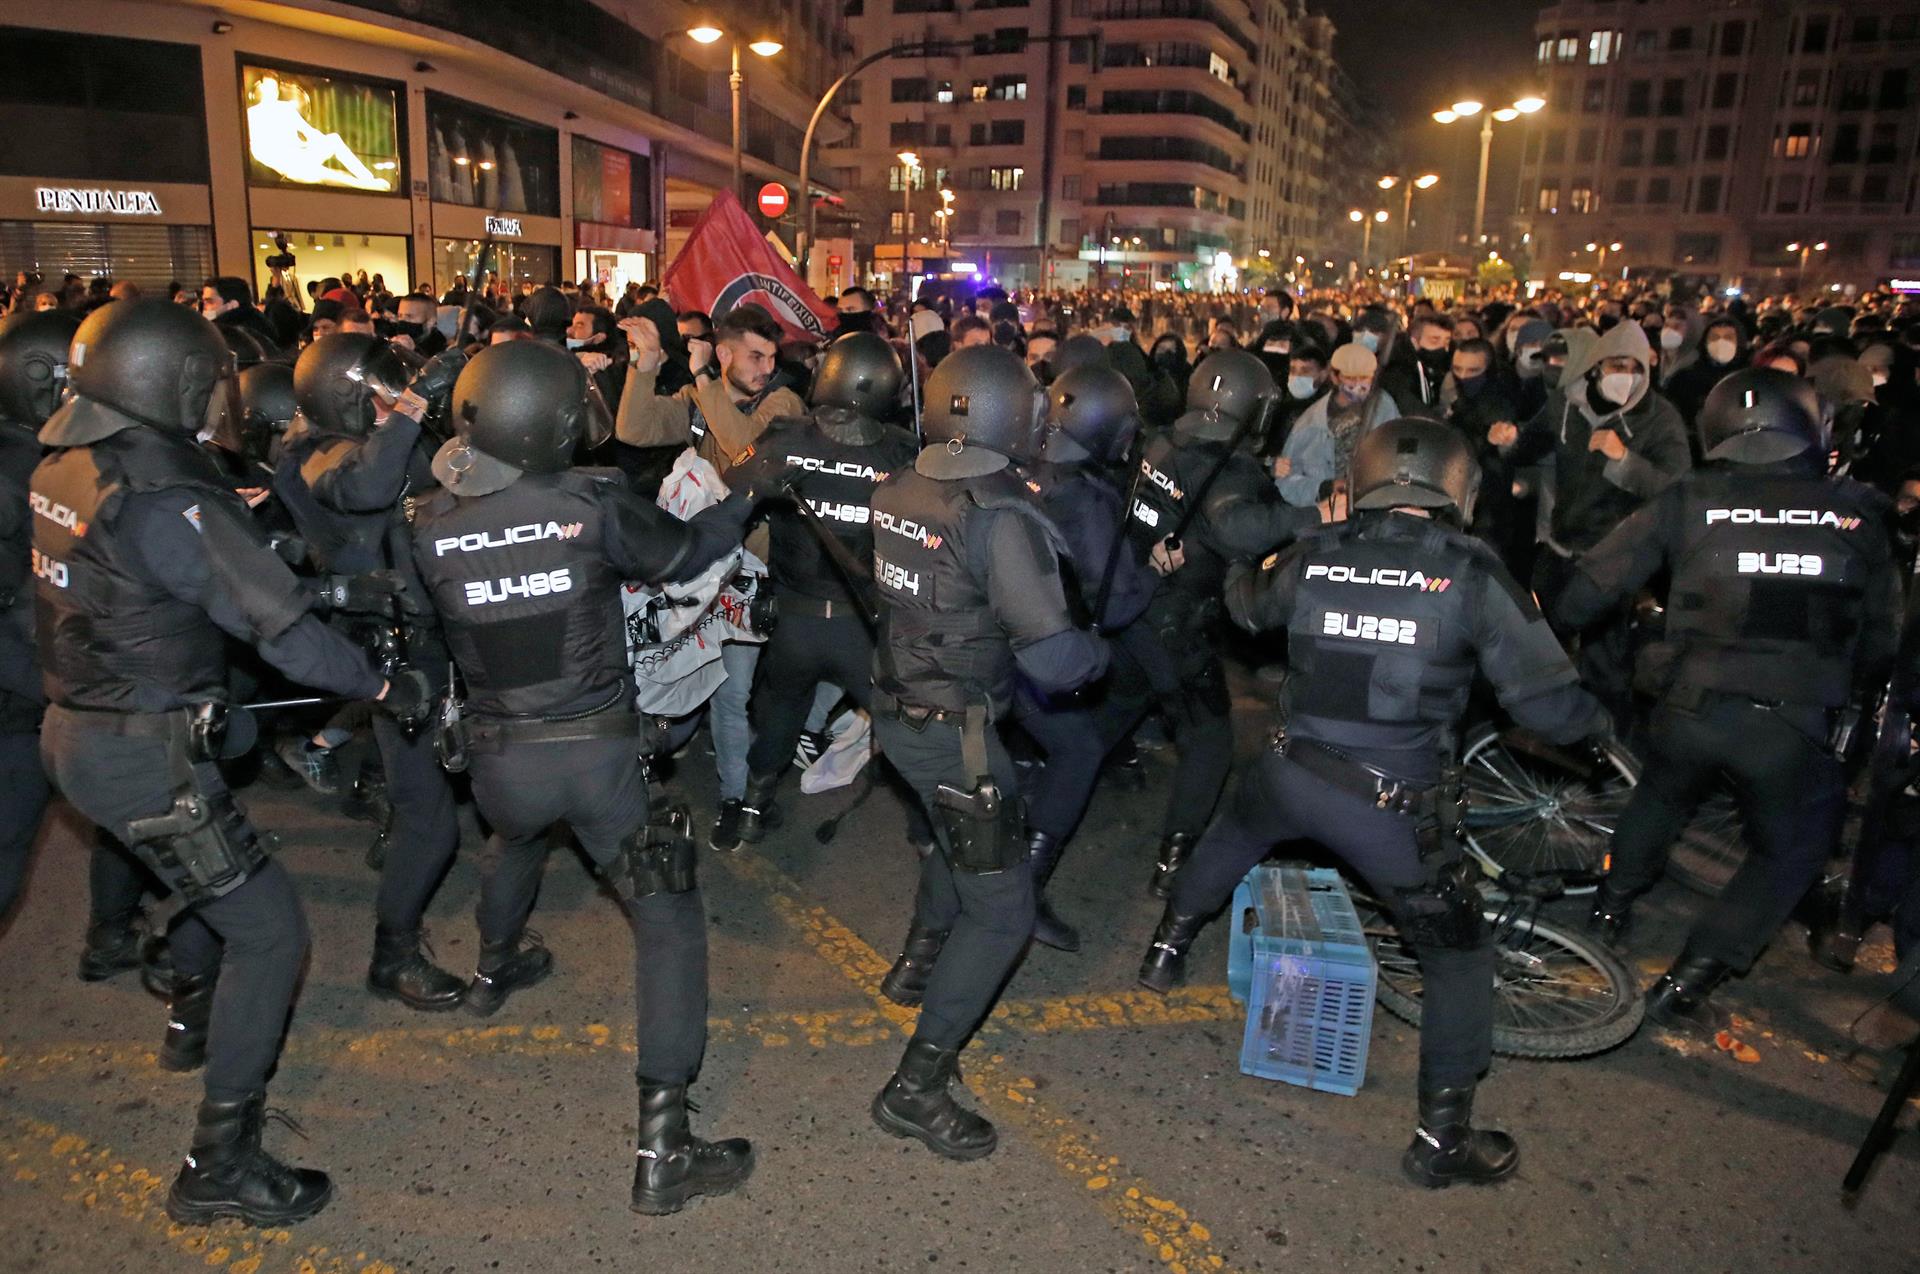 La Policía antidisturbios carga contra los manifestantes durante la concentración convocada en València en protesta por la detención e ingreso en prisión del rapero Pablo Hasel, en una imagen del 18 de febrero de 2021. EFE/ Biel Aliño